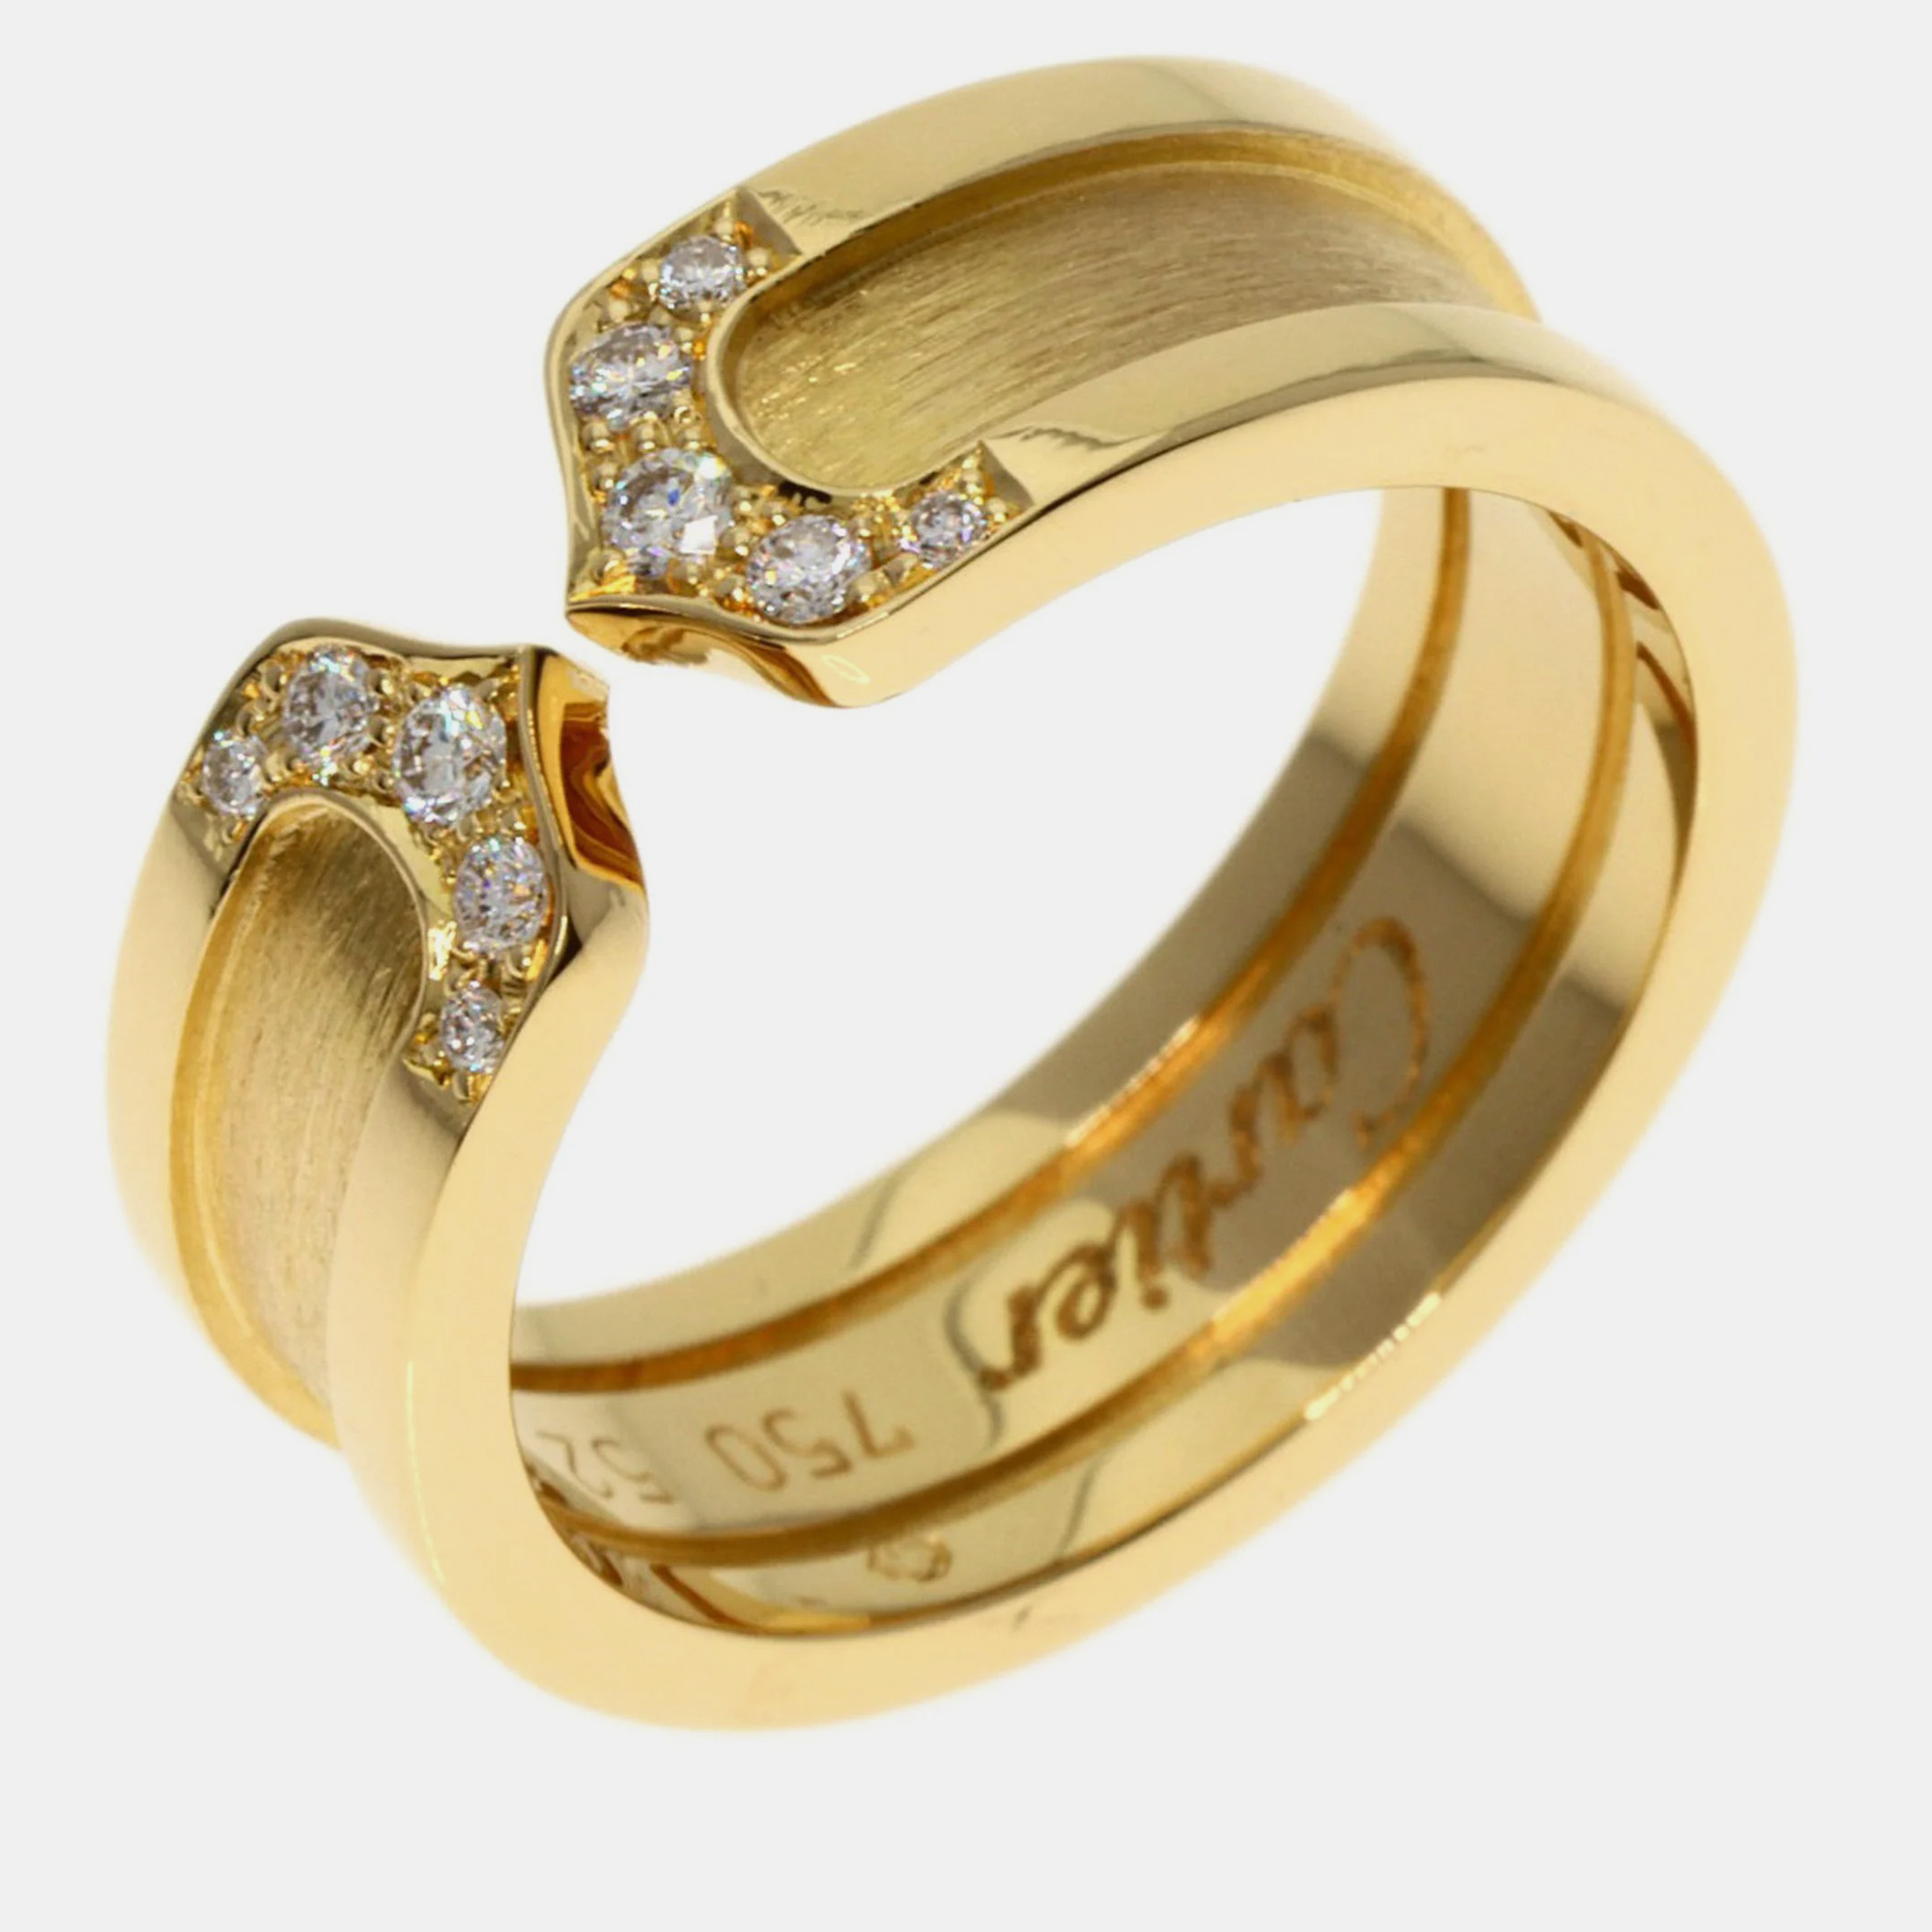 Cartier Double C 18K Yellow Gold Diamond Ring EU 52